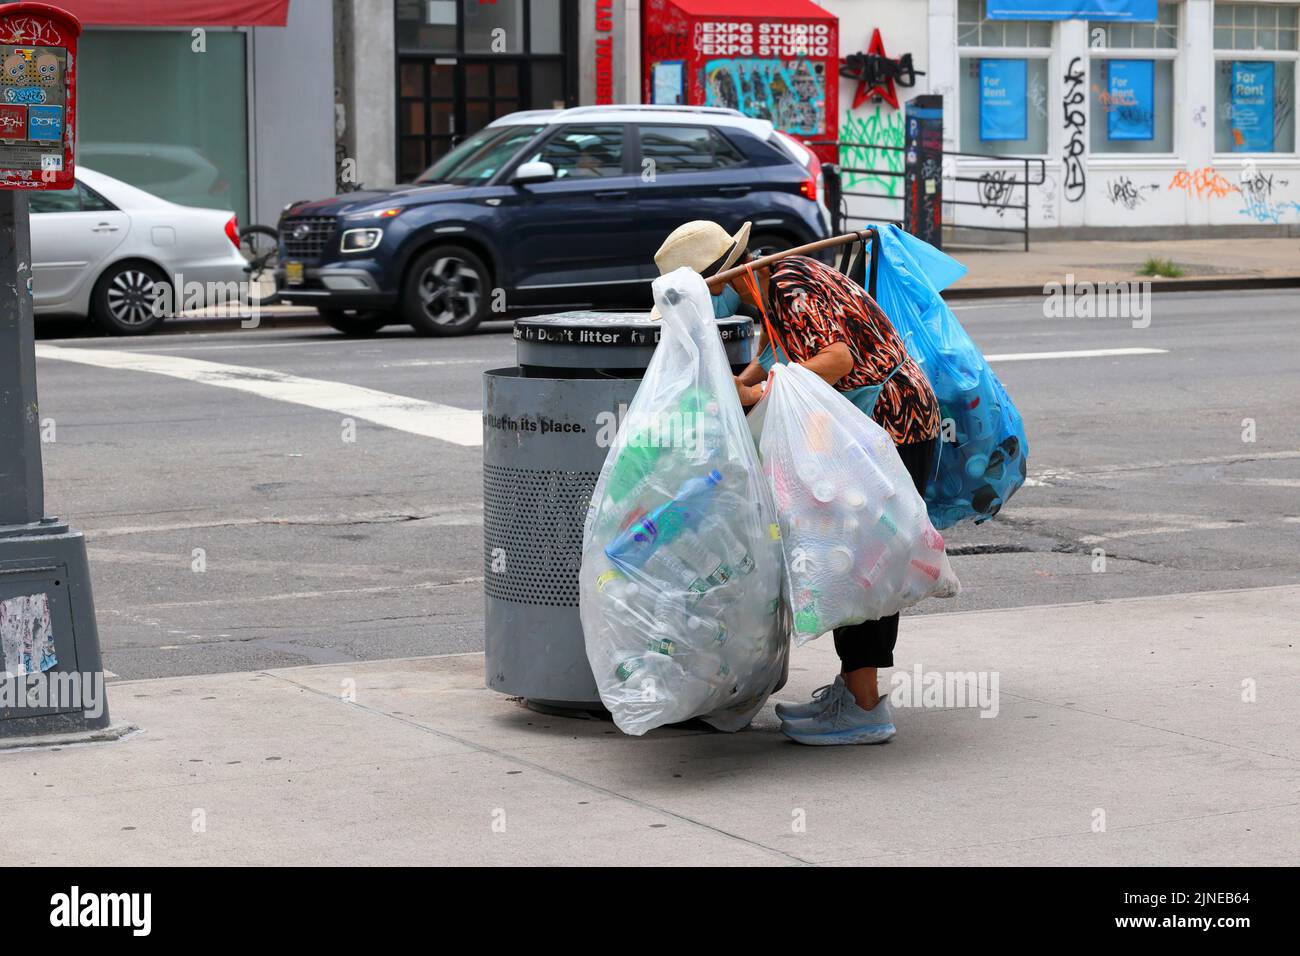 Ein älterer Asiat greift in einen New Yorker Abfalleimer, um Wertstoffe zu sammeln. Viele Menschen, vor allem ältere Chinesen, sind von den ... abhängig Stockfoto